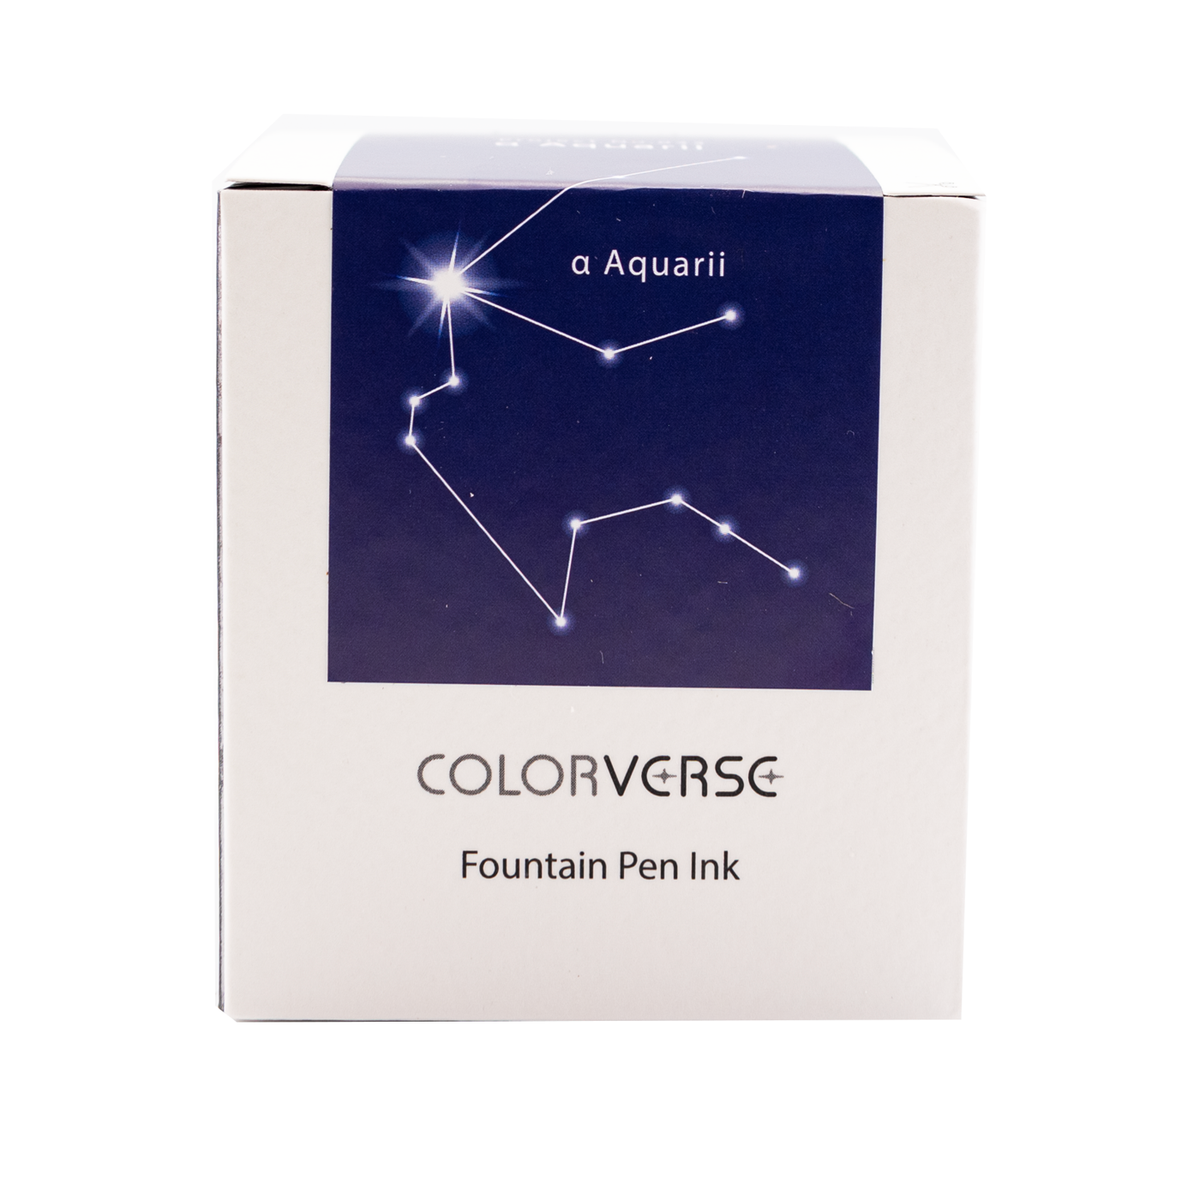 Colorverse Project Vol. 5  Constellation II No. 033 - a Aquarii